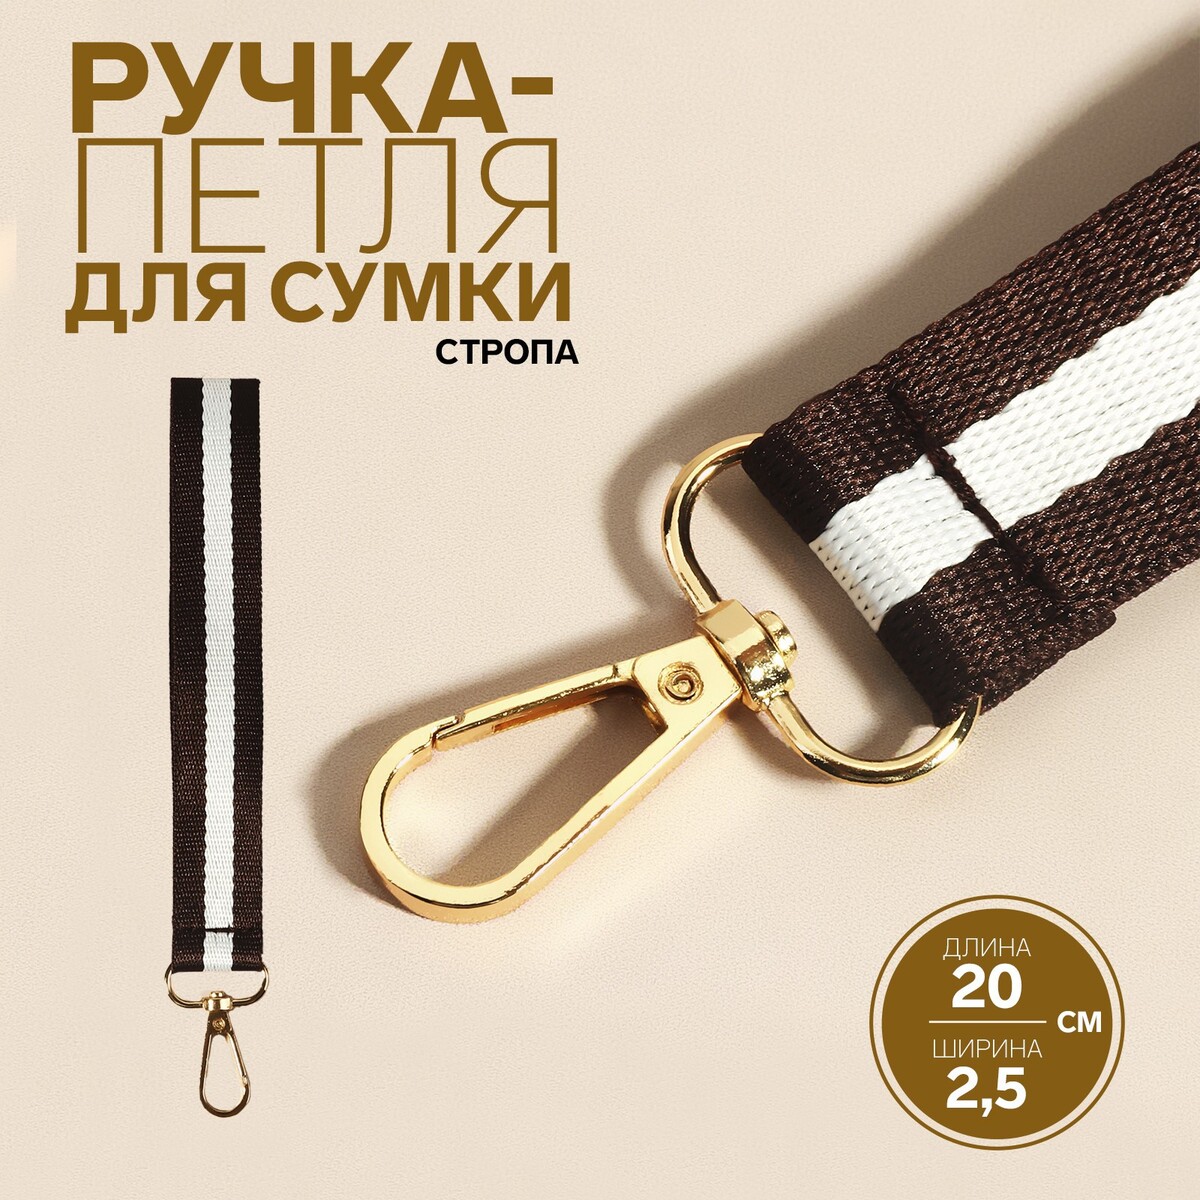 Ручка-петля для сумки, стропа, 20 × 2,5 см, цвет коричневый/белый накладки на ручку для сумки на кнопках 13 × 9 см 2 шт темно коричневый